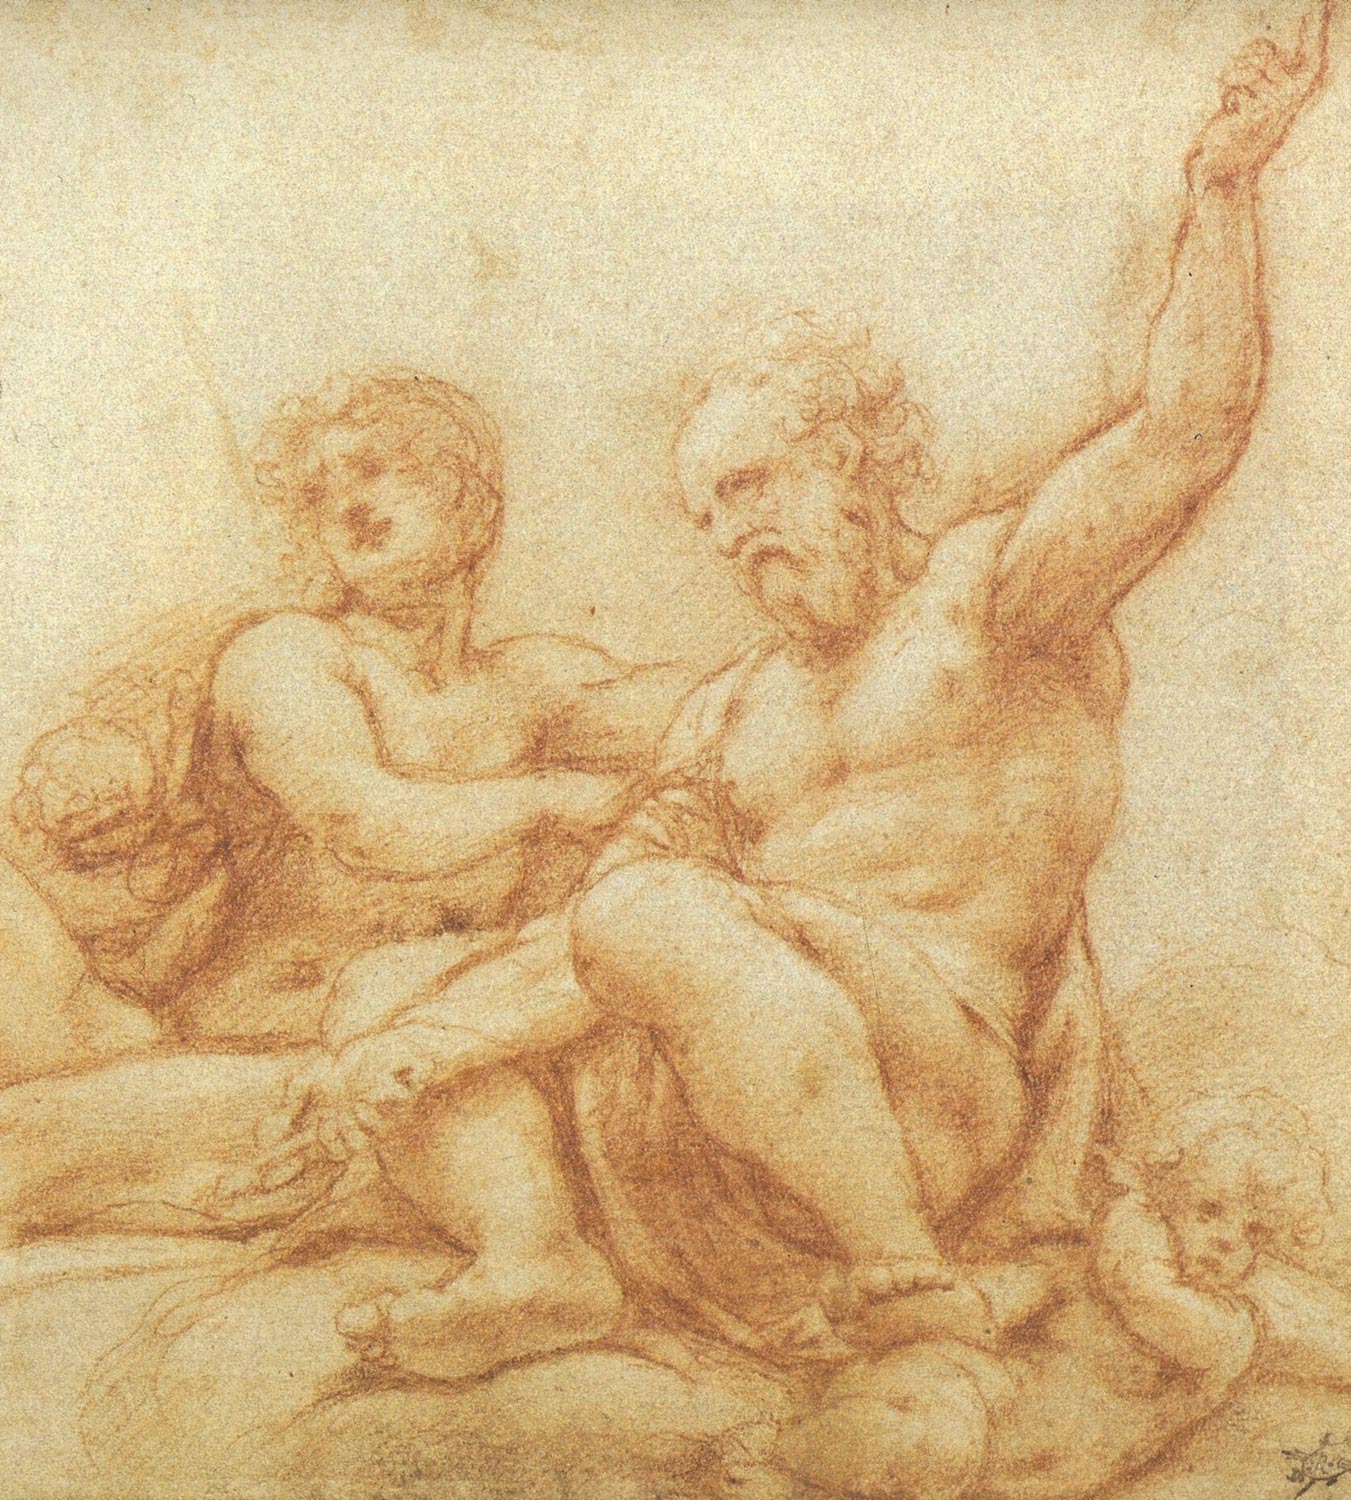 Correggio. Disegno di studio per il san Paolo e il san Pietro. Vi si coglie il metodo stesso di Leonardo, con una scioltezza di mirabile commozione interiore.
